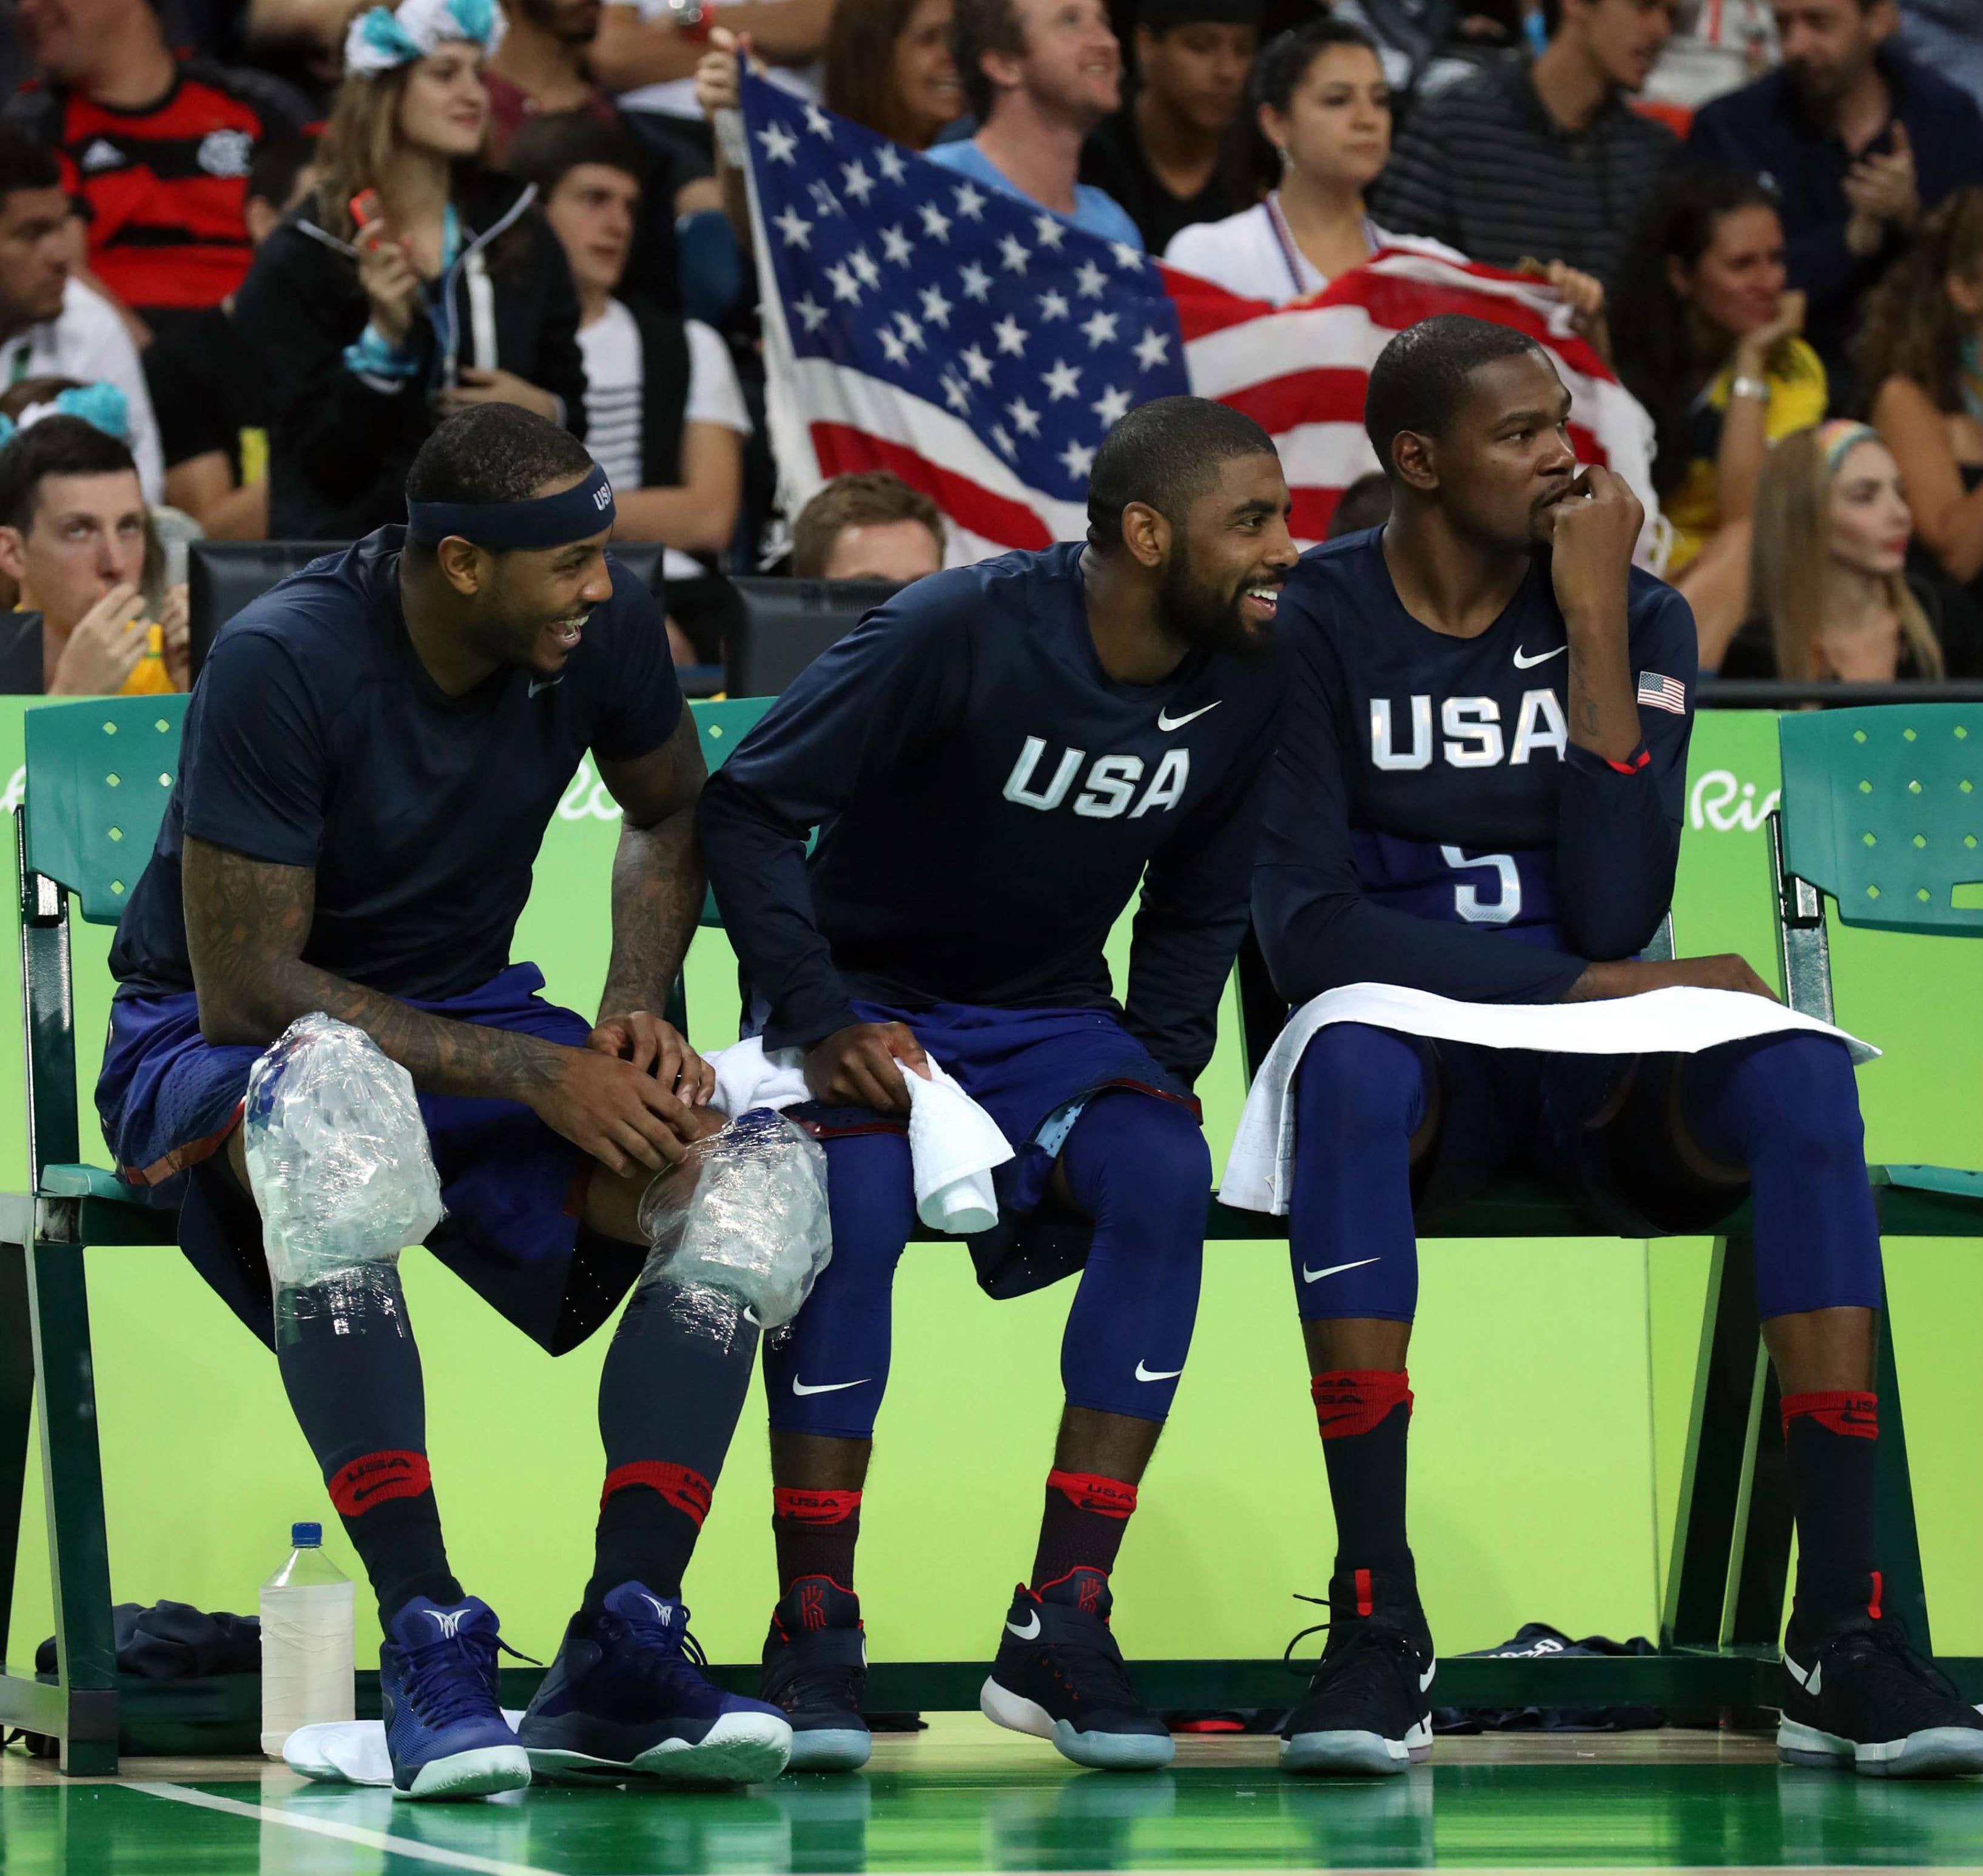 USA Basketball Sneakers vs. China